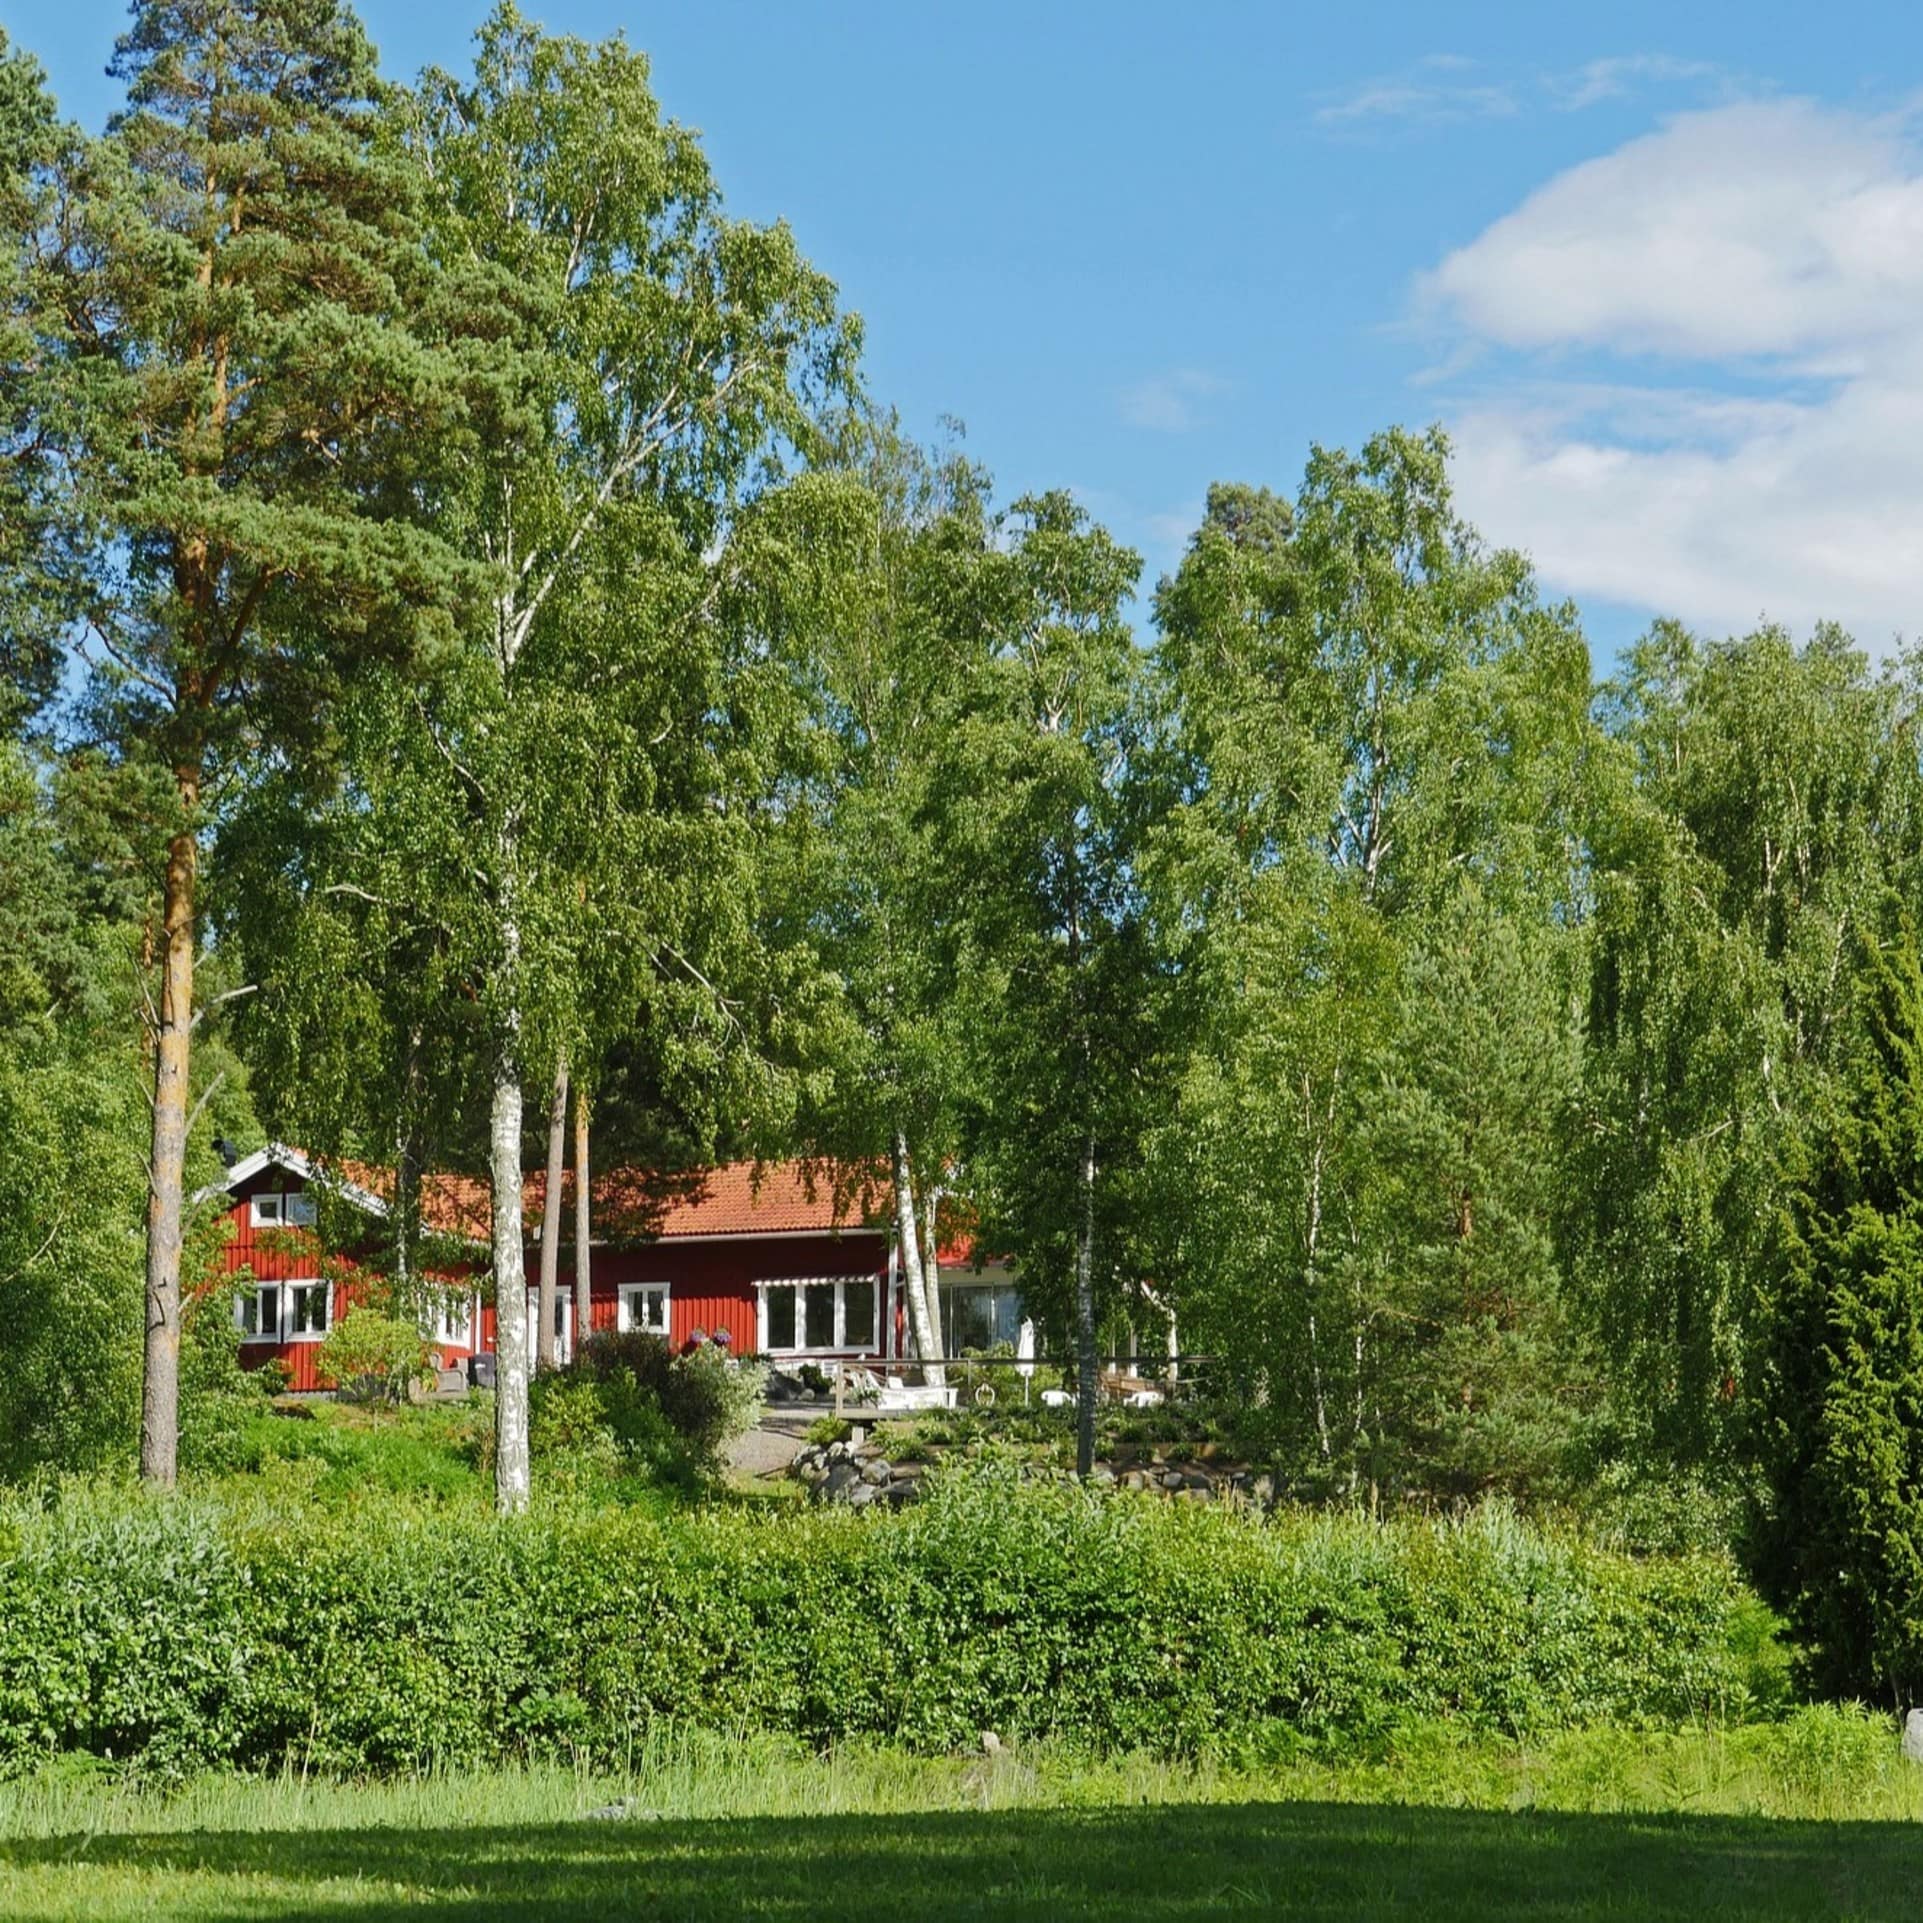 Typisches Schwedenhaus zwischen Bäumen versteckt